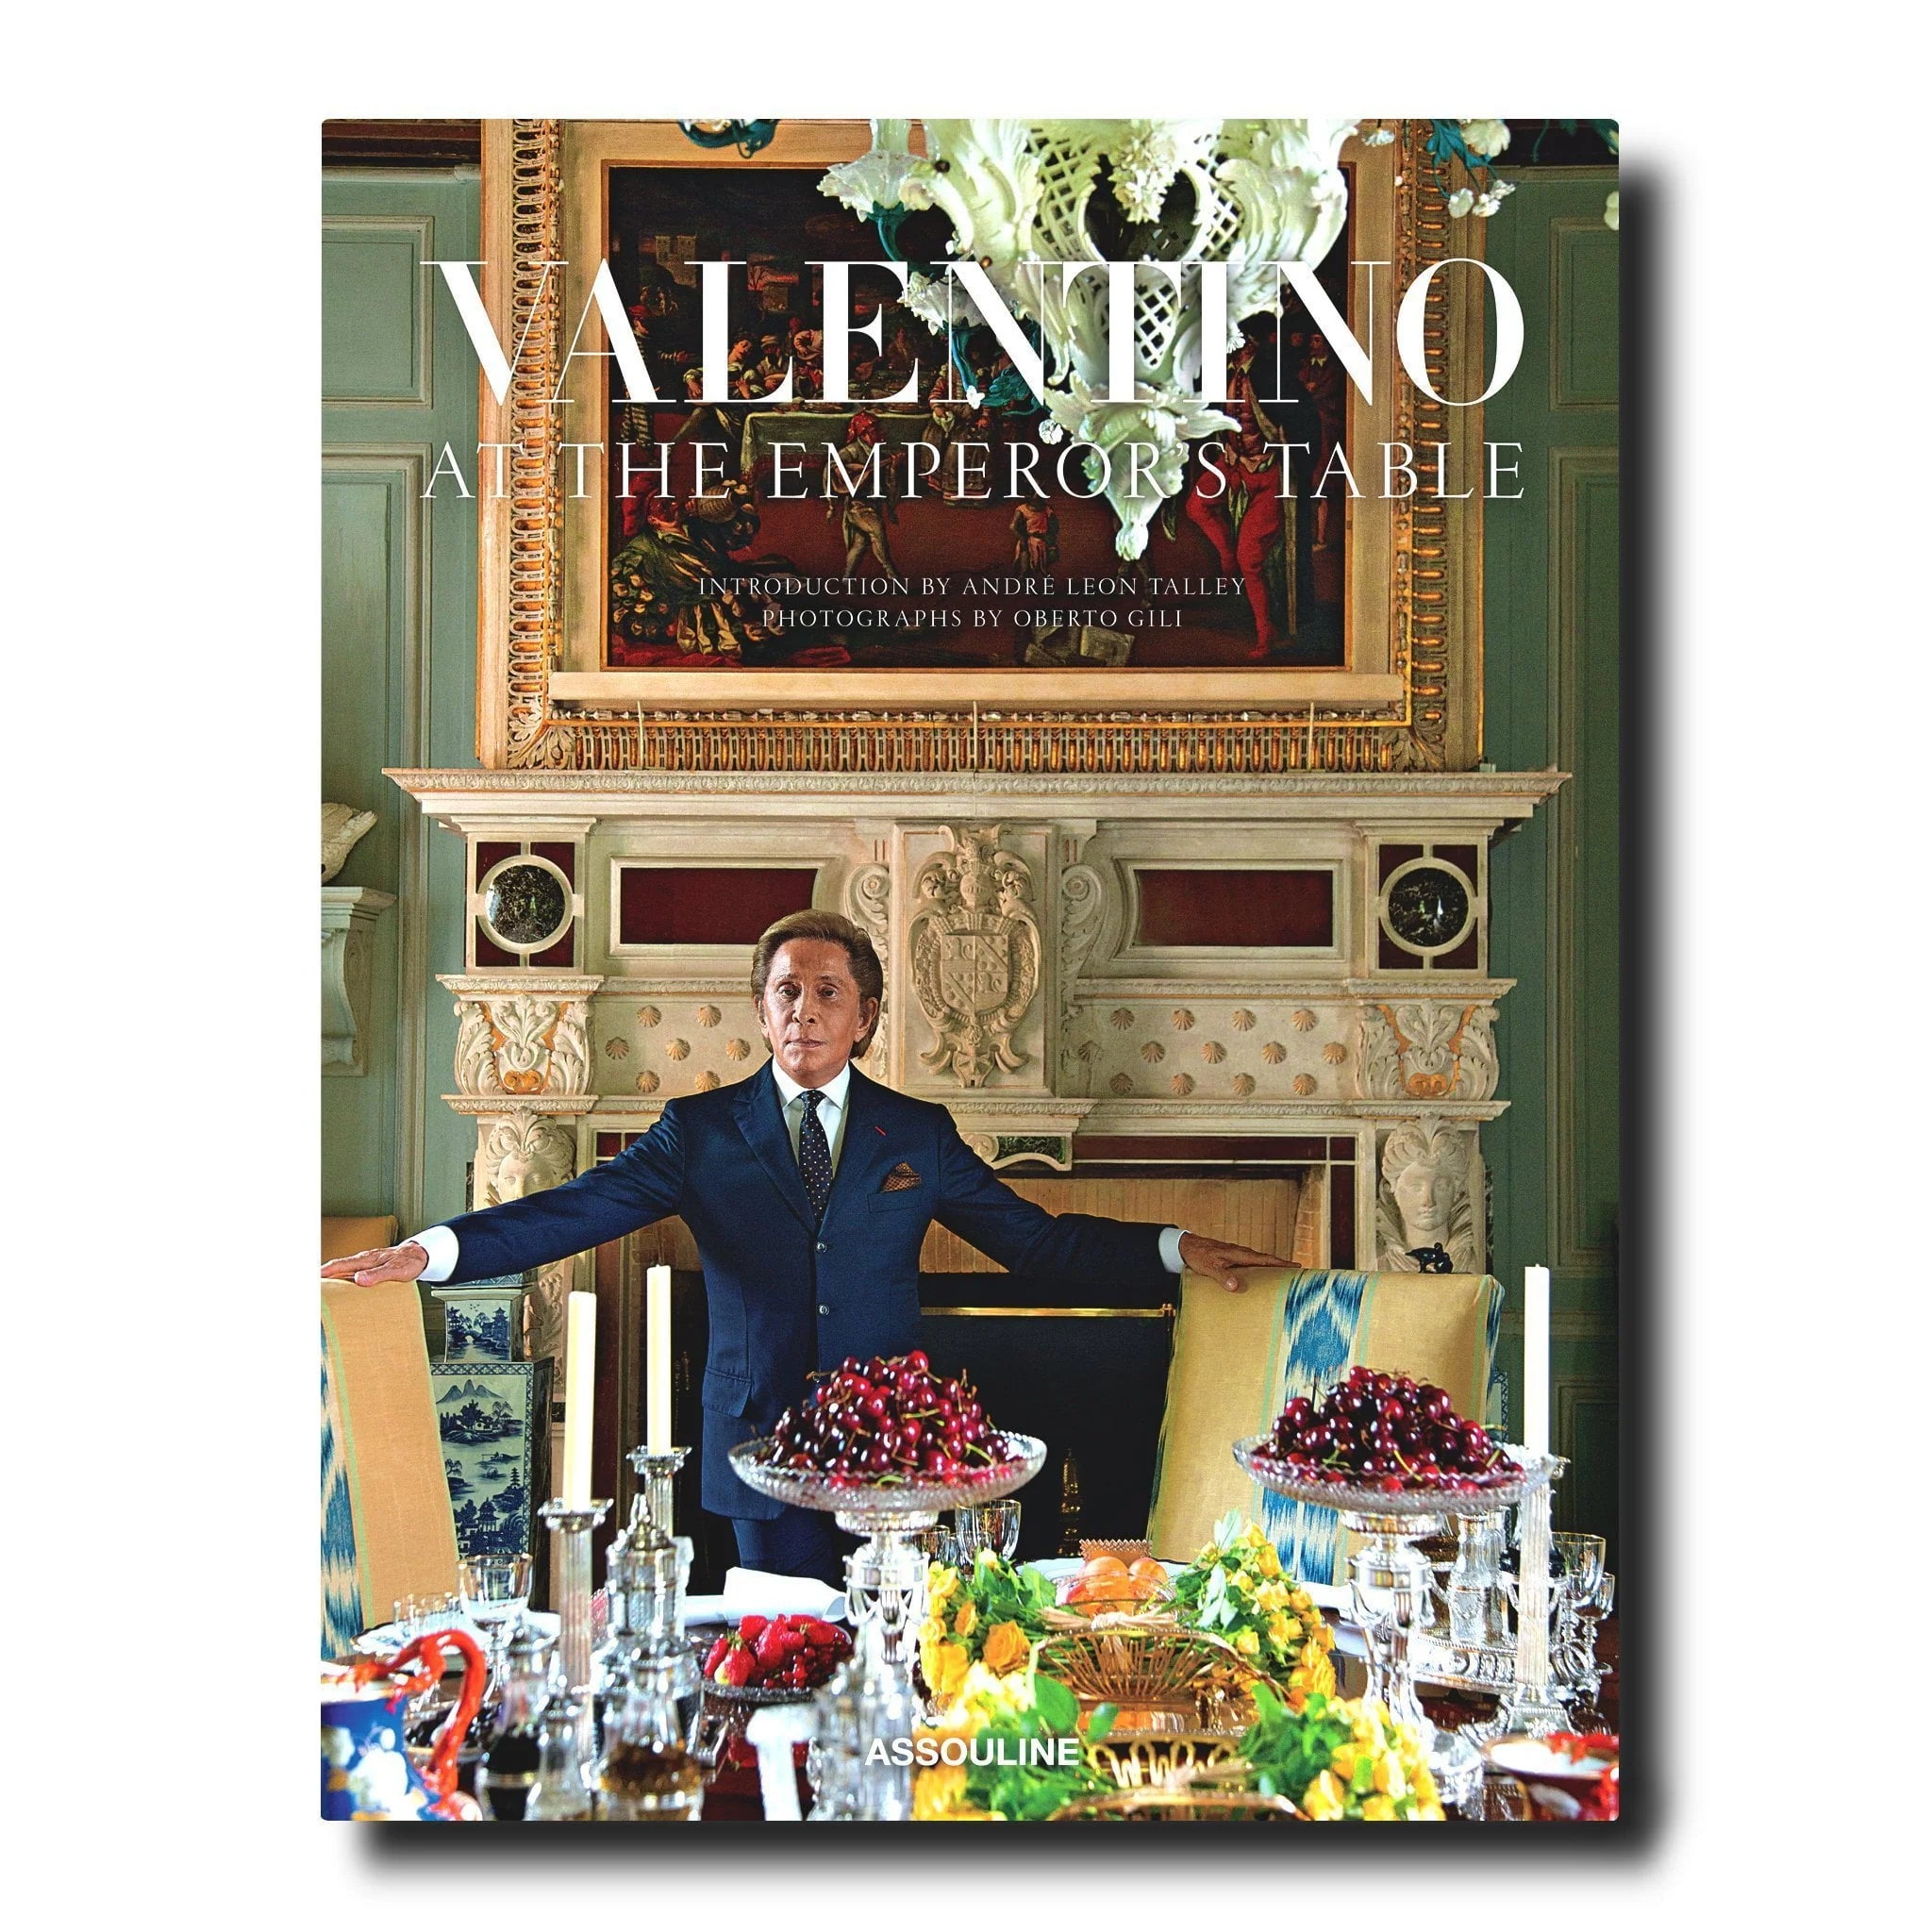 VALENTINO: AT THE EMPEROR´S TABLE, lilbro decorativo sobre este famoso modisto